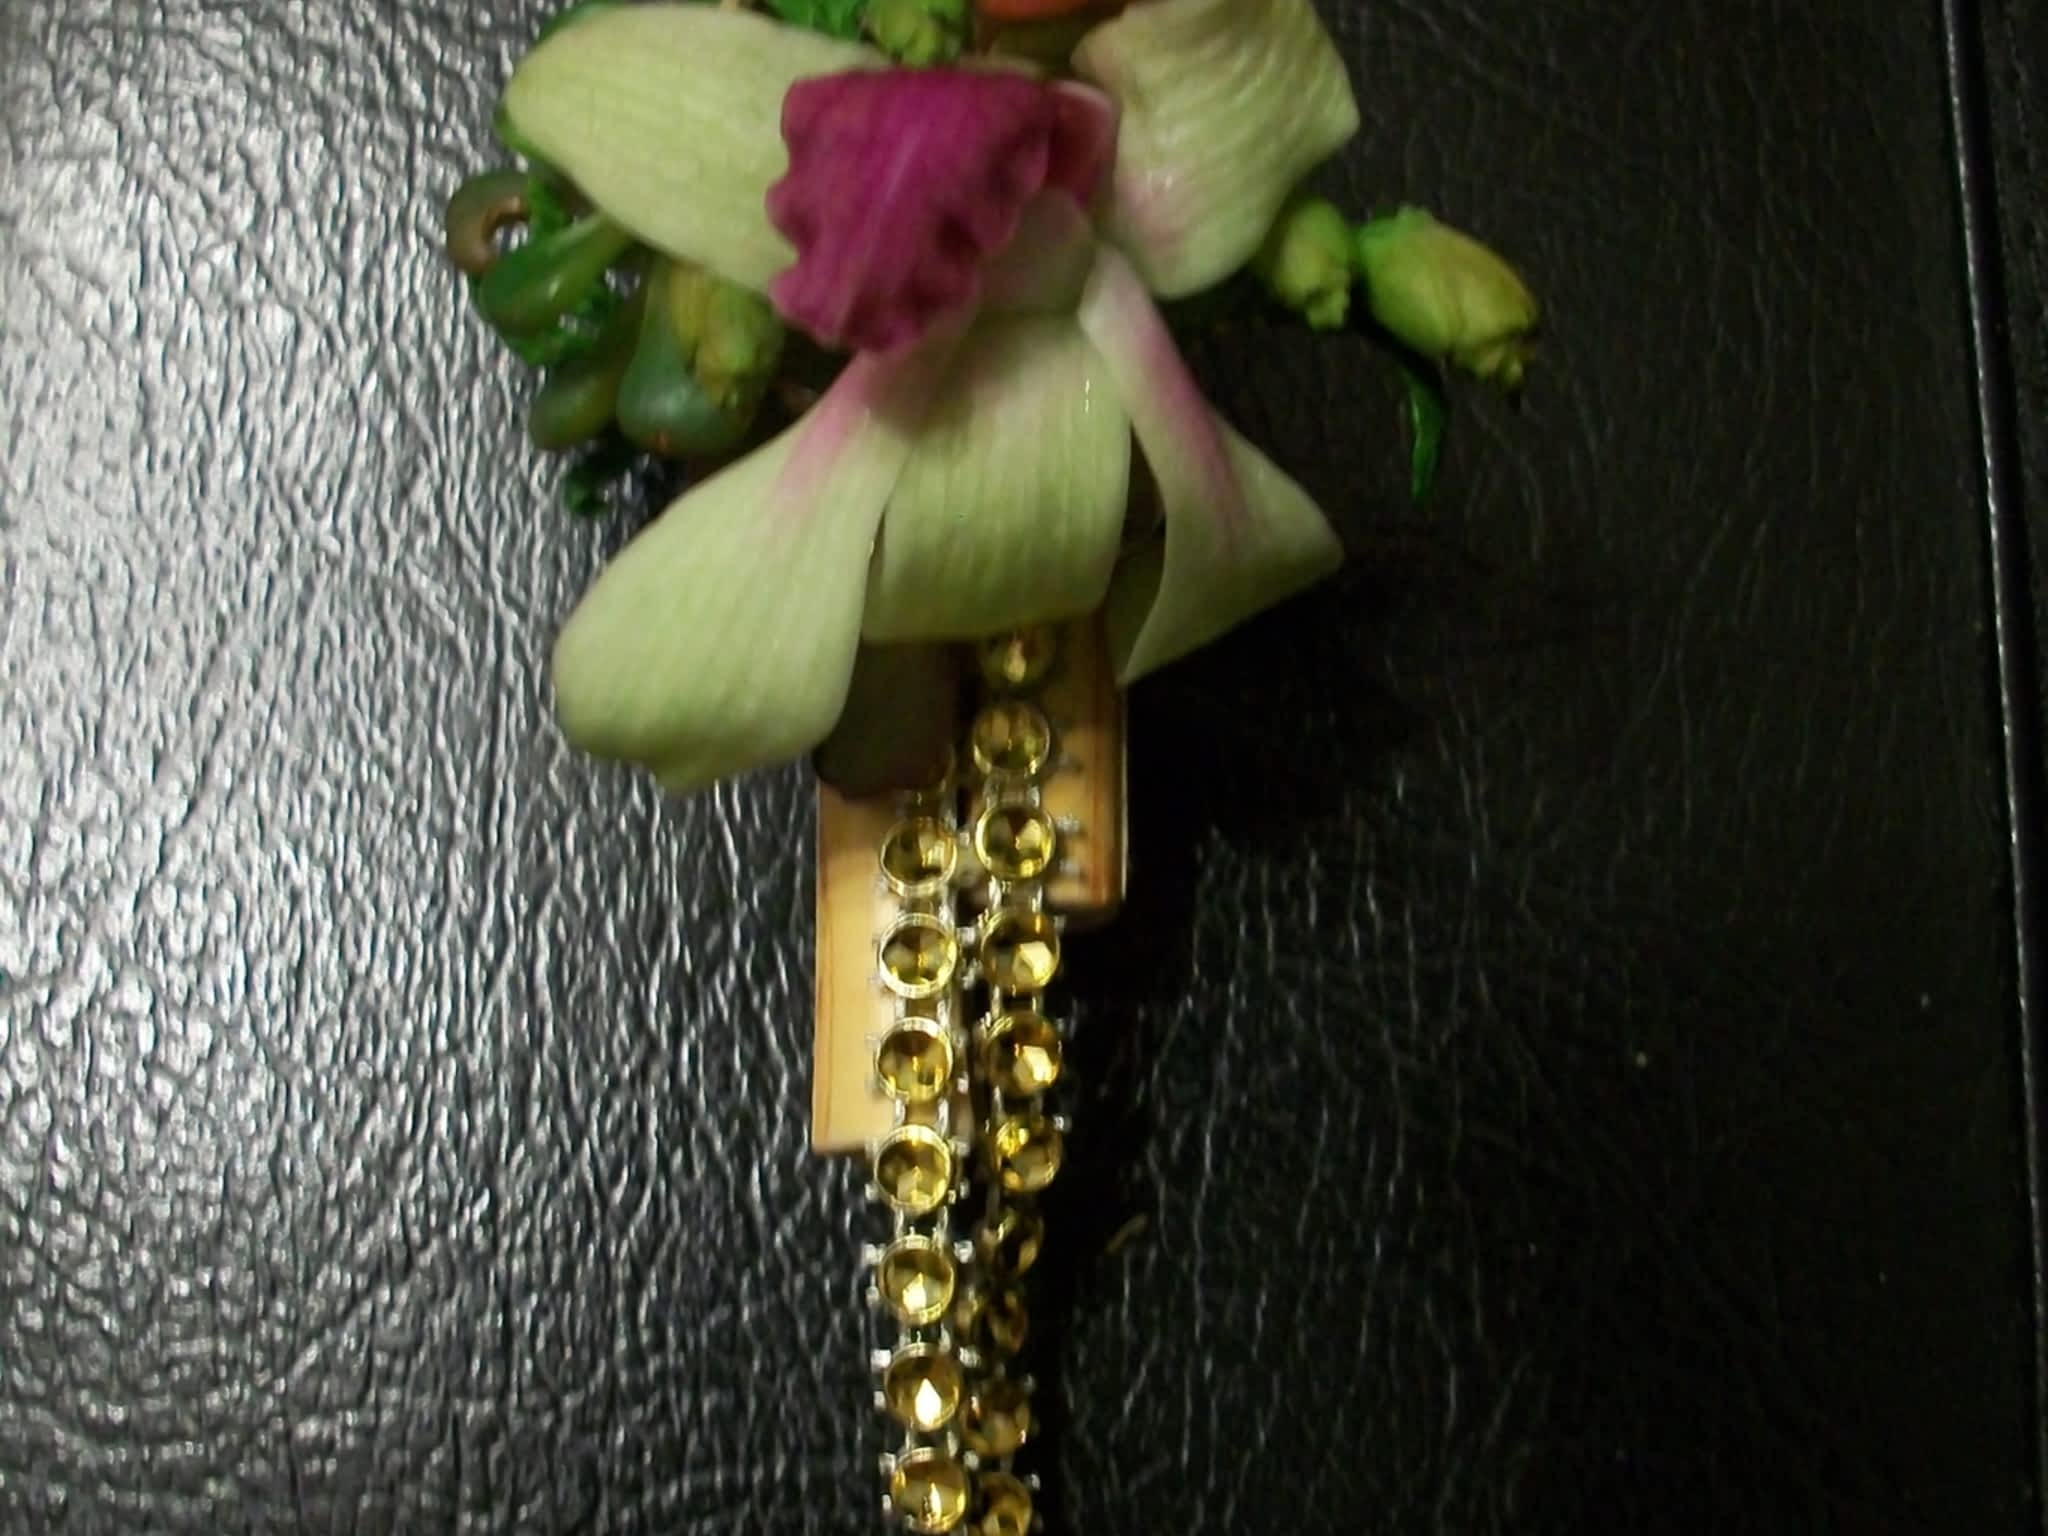 photo Malgosia's Flower Adornments